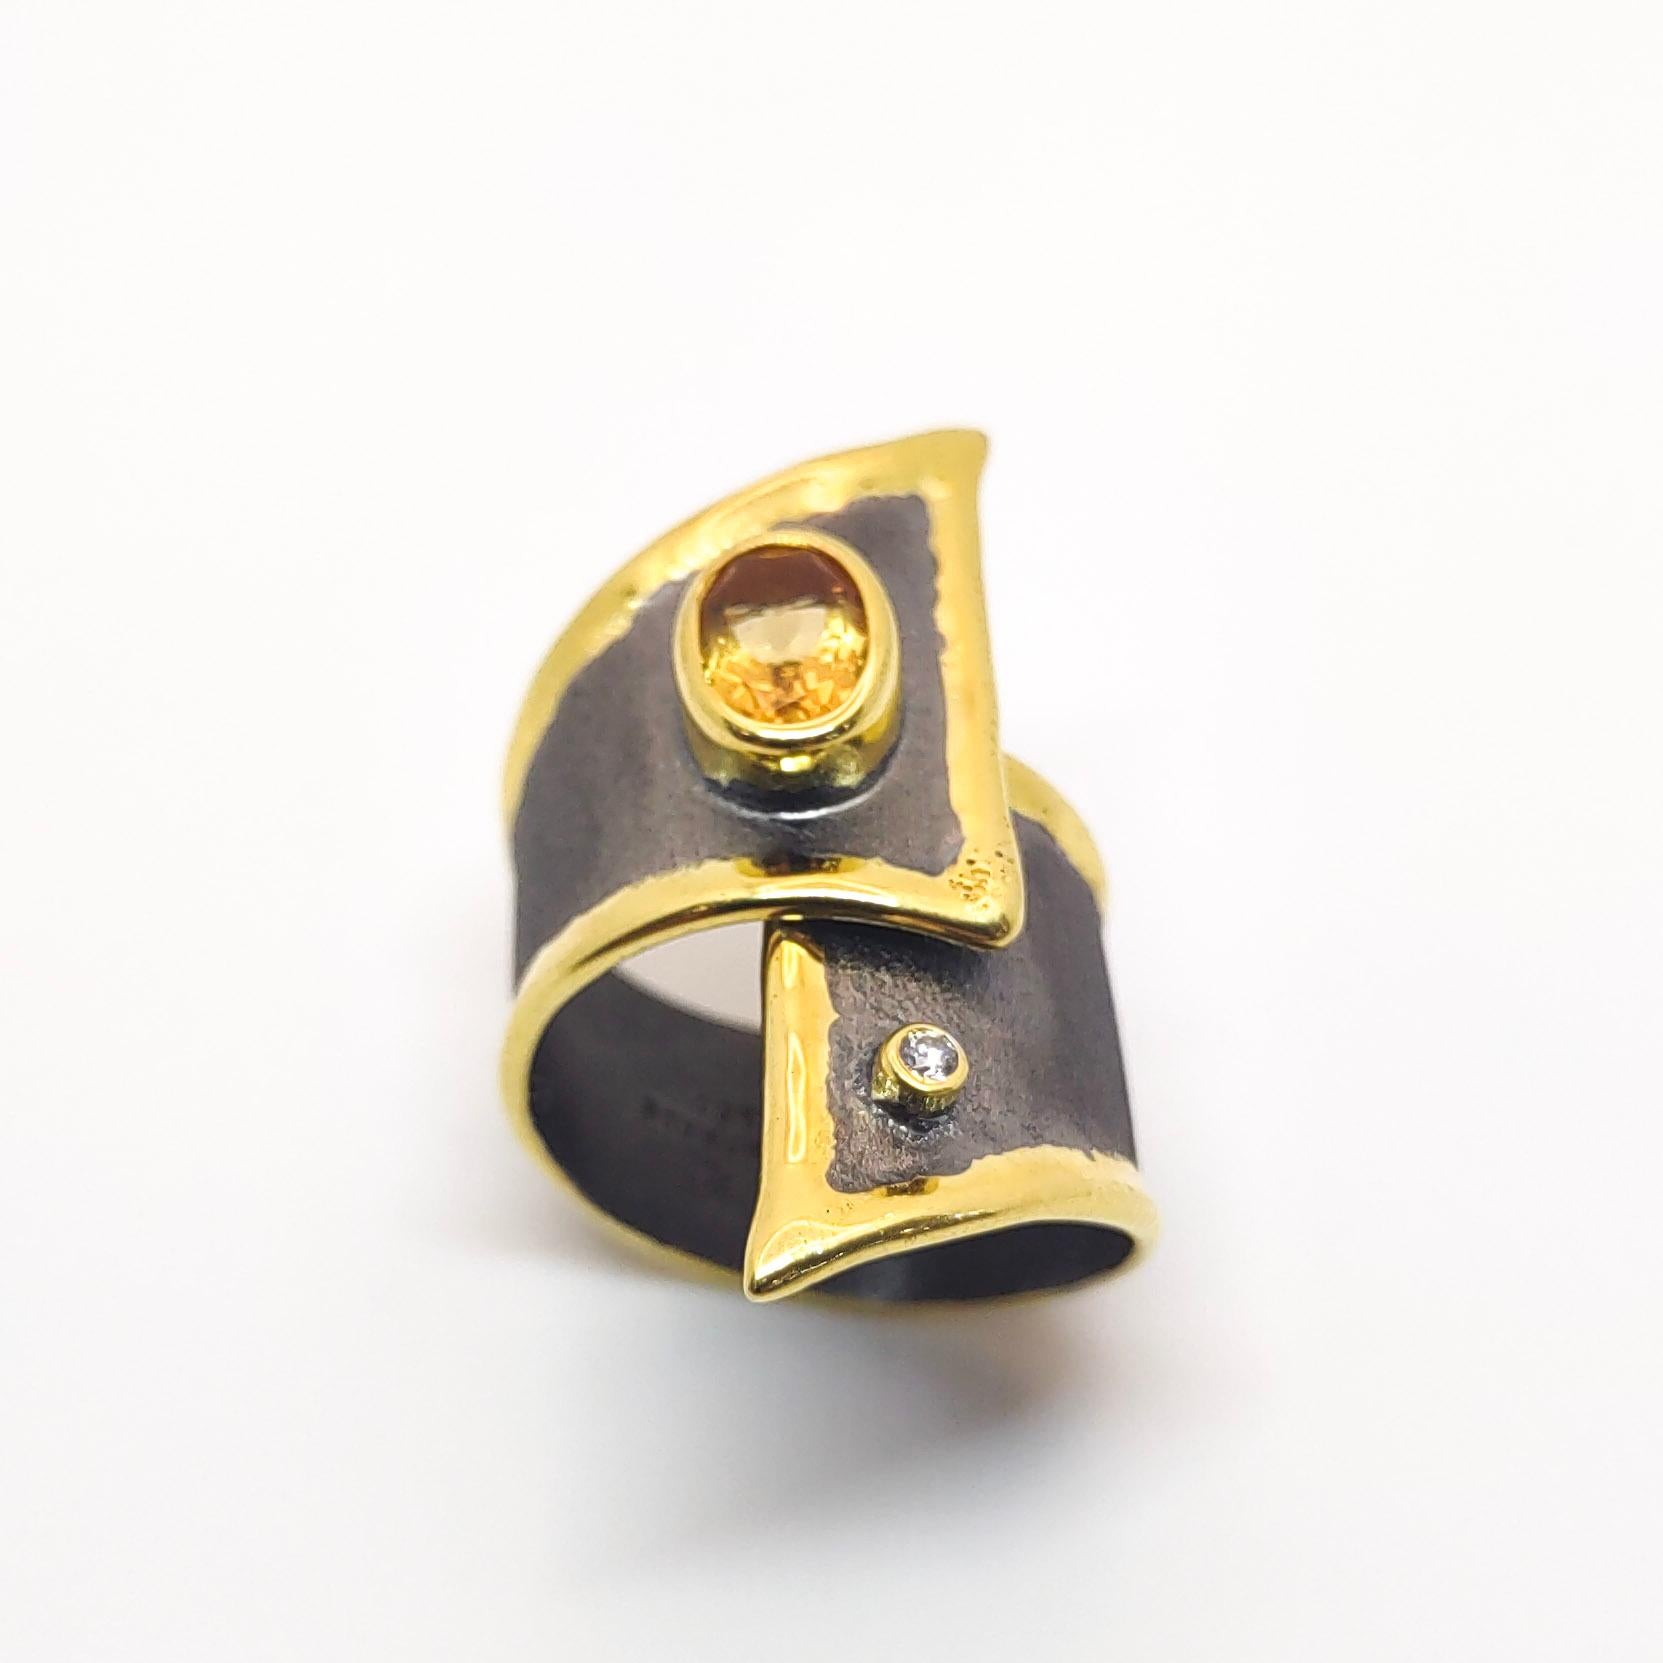 Yianni Creations présente une bague artisanale Eclyps Collection faite à la main à partir d'argent fin 950 pureté plaqué rhodium noir. Cette large bague asymétrique présente une citrine de 1,25 carat accompagnée d'un diamant blanc de 0,03 carat sur